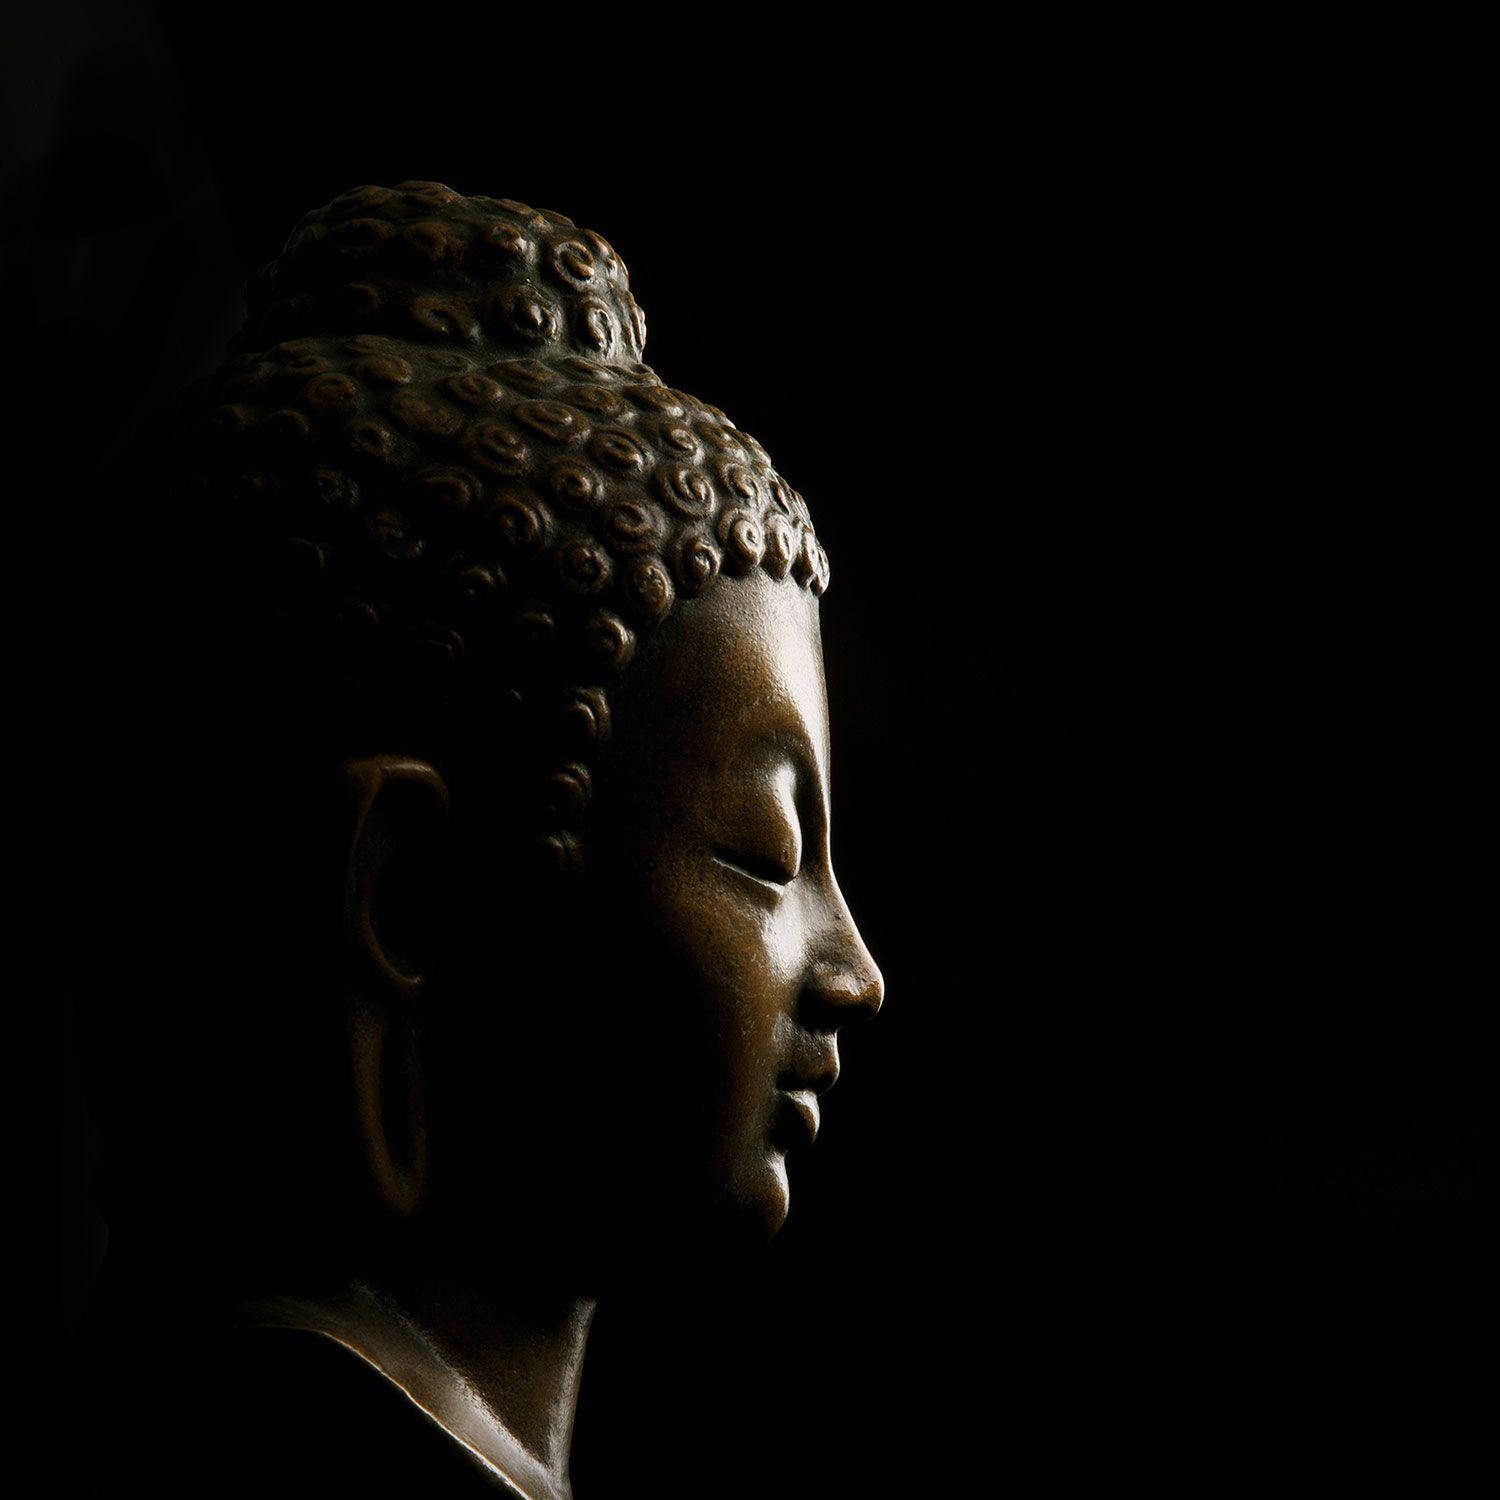 Sort Buddha-profil Wallpaper